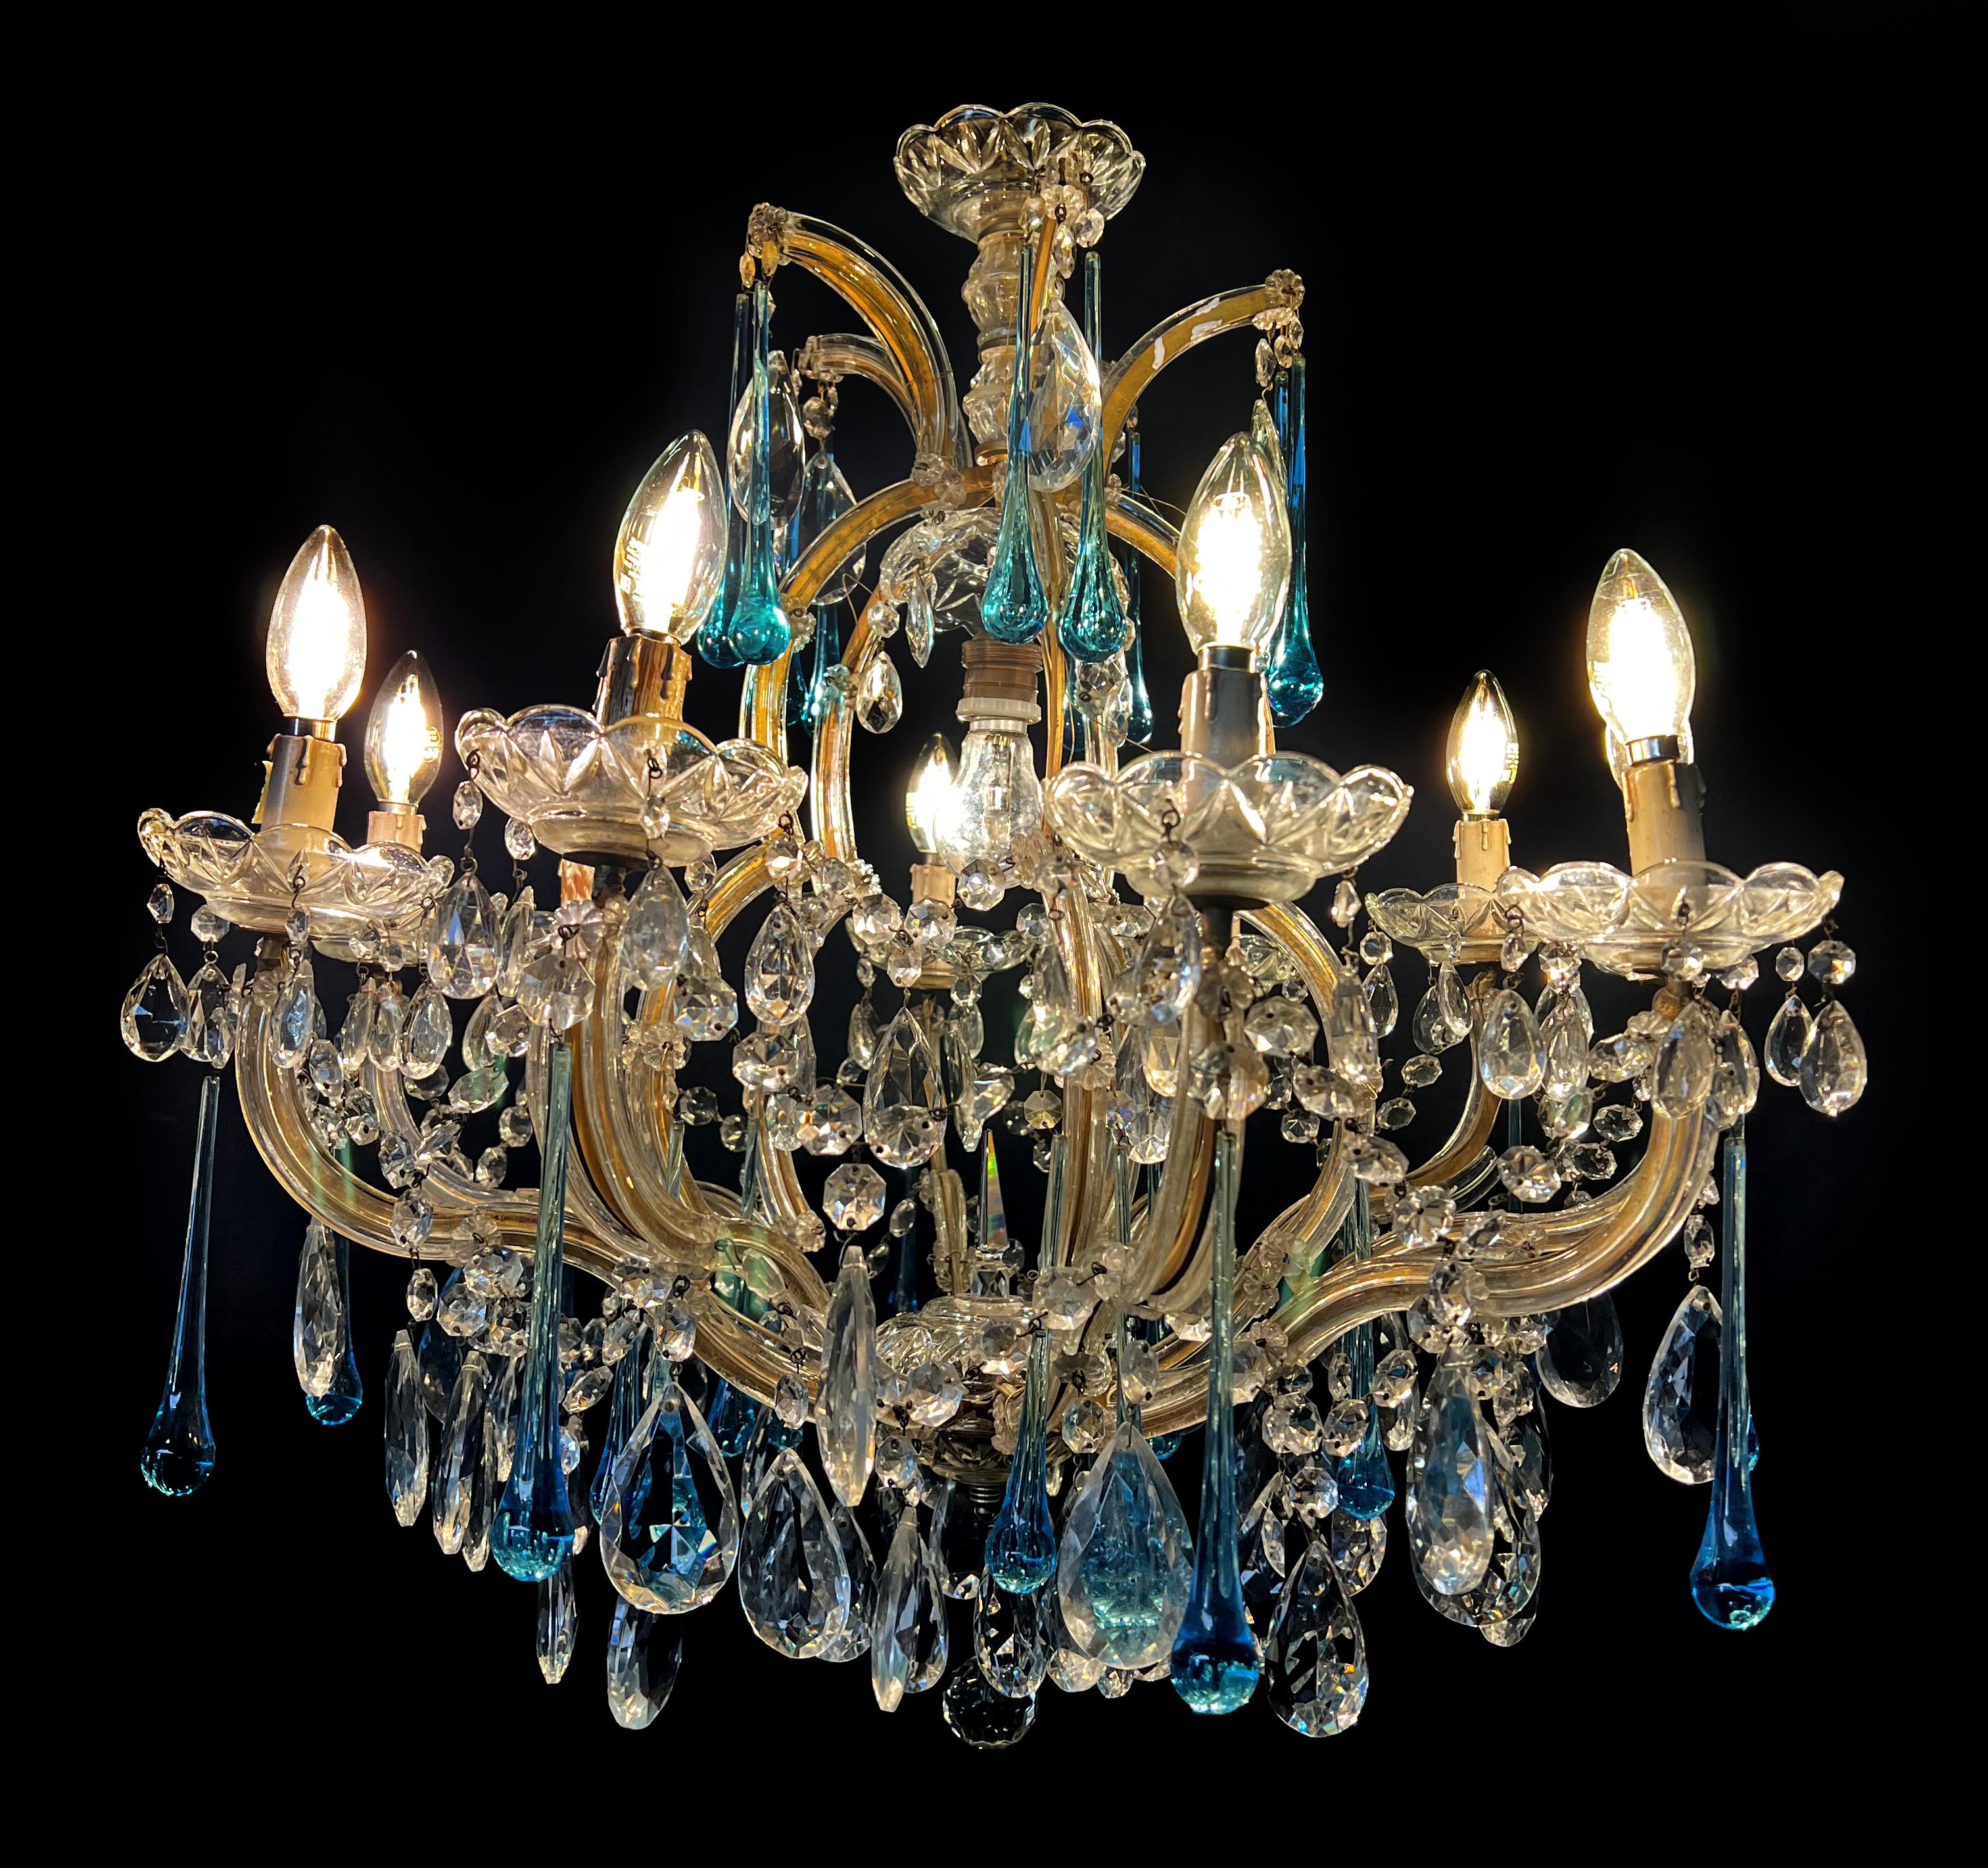 Fascinant lustre de Murano inspiré par la divine Liz Taylor.
Hauteur 70 cm, diamètre 67 cm. Dix lampes E14